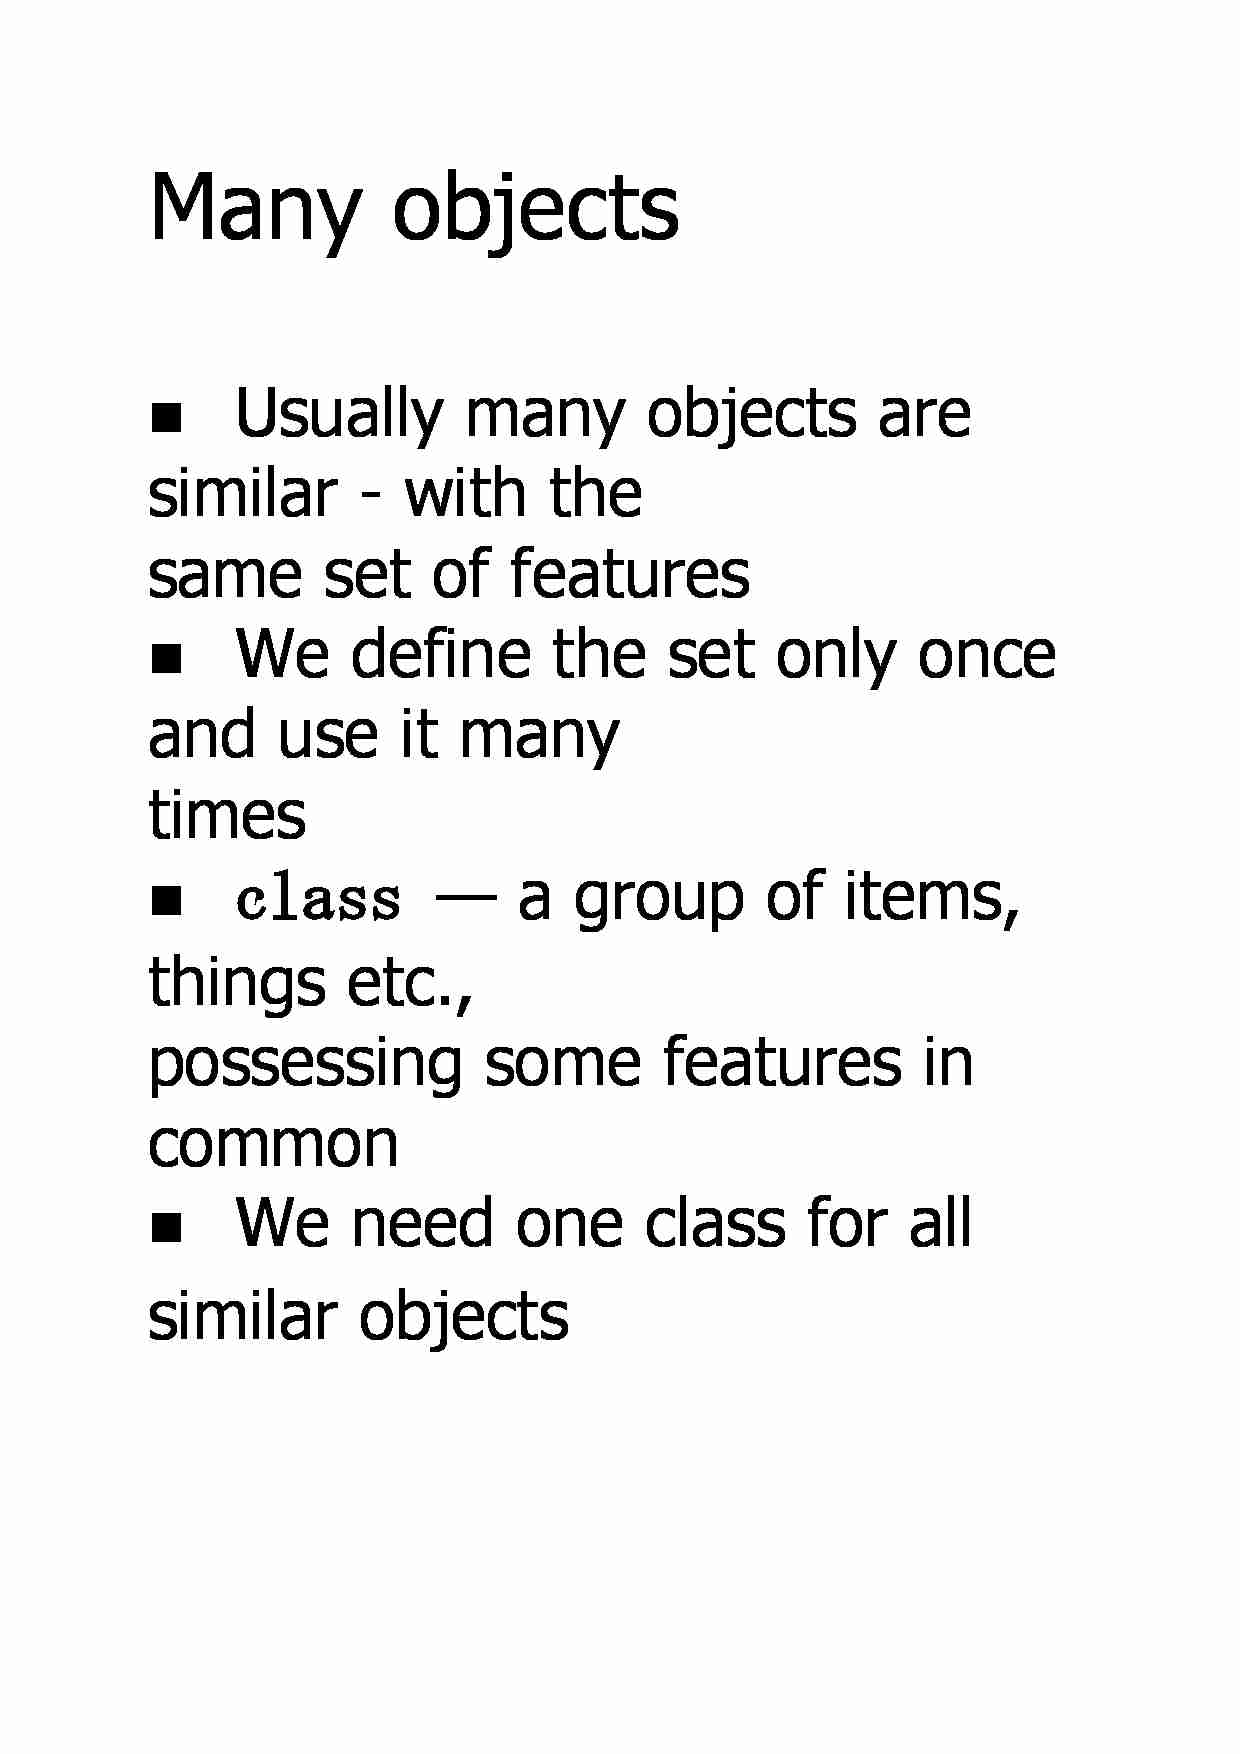 Many objects - strona 1